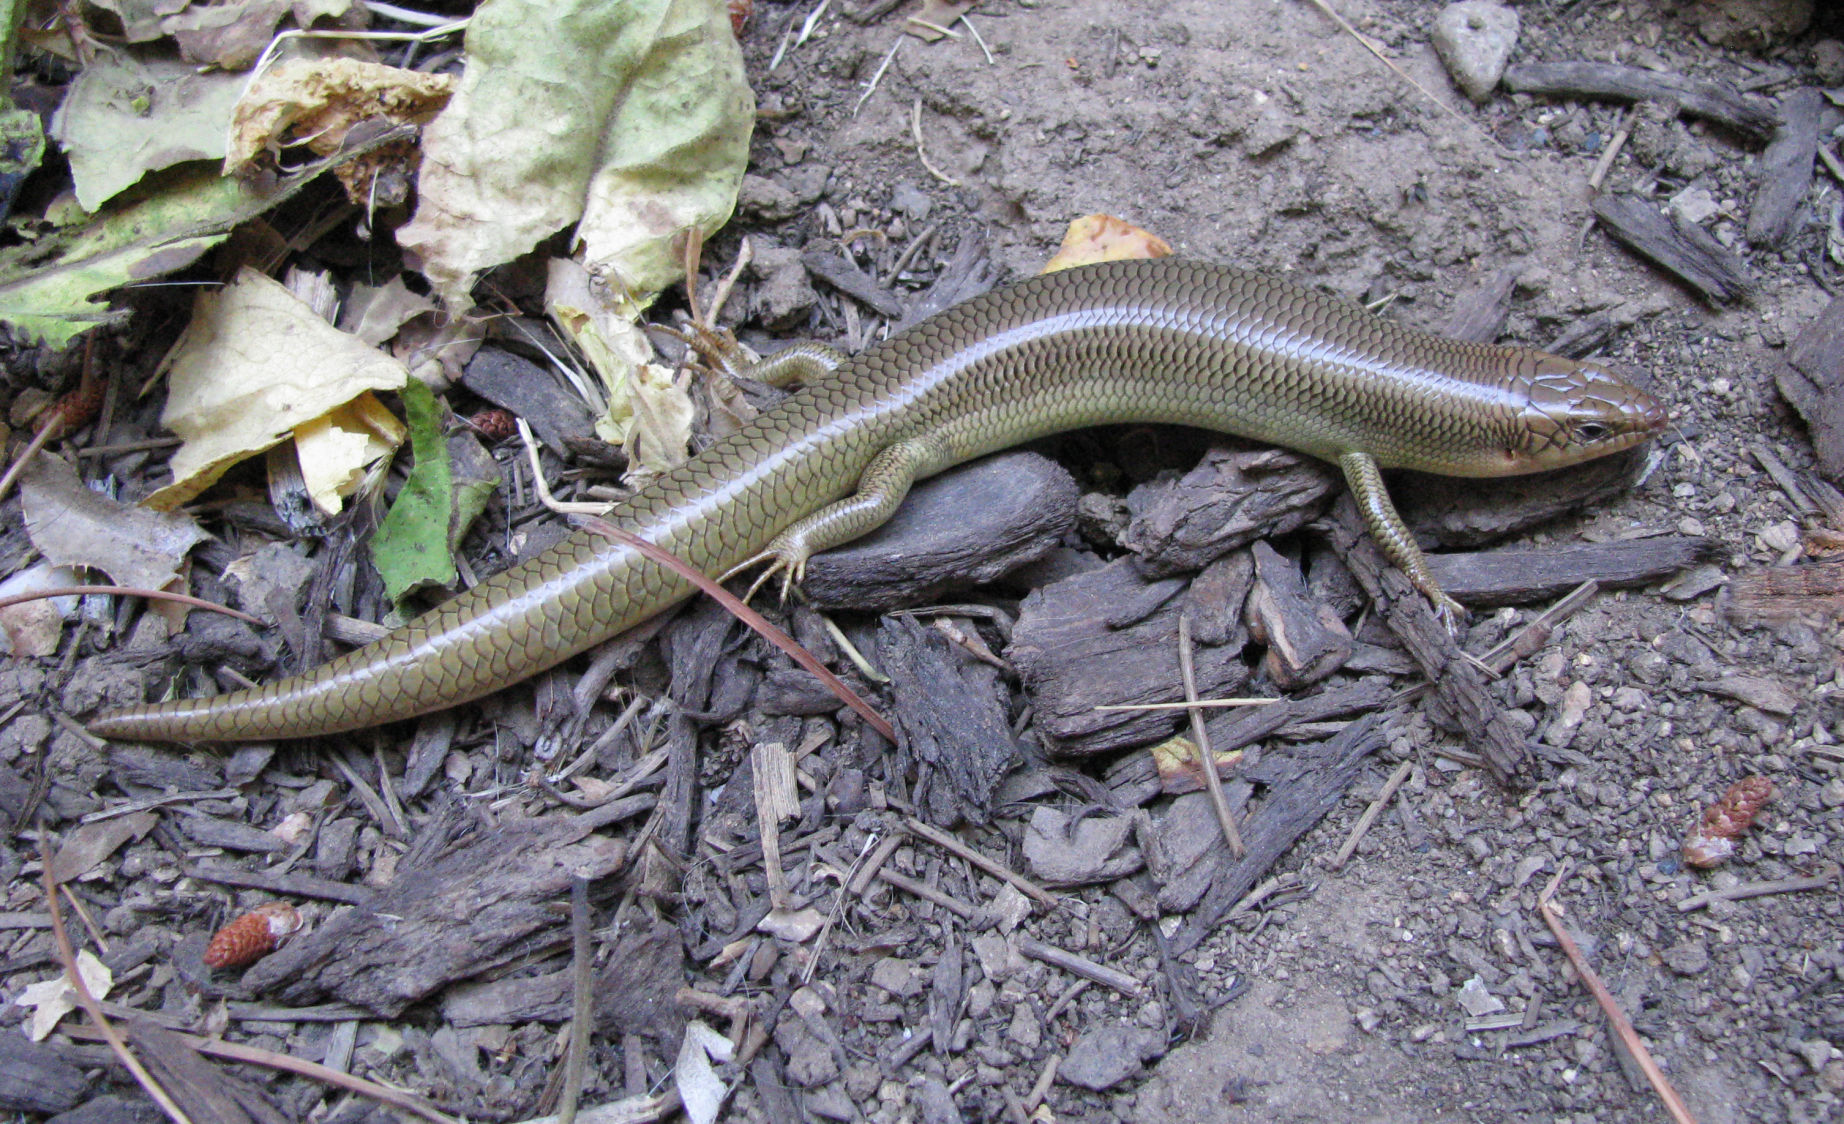 a snake-like lizard with smooth skin 